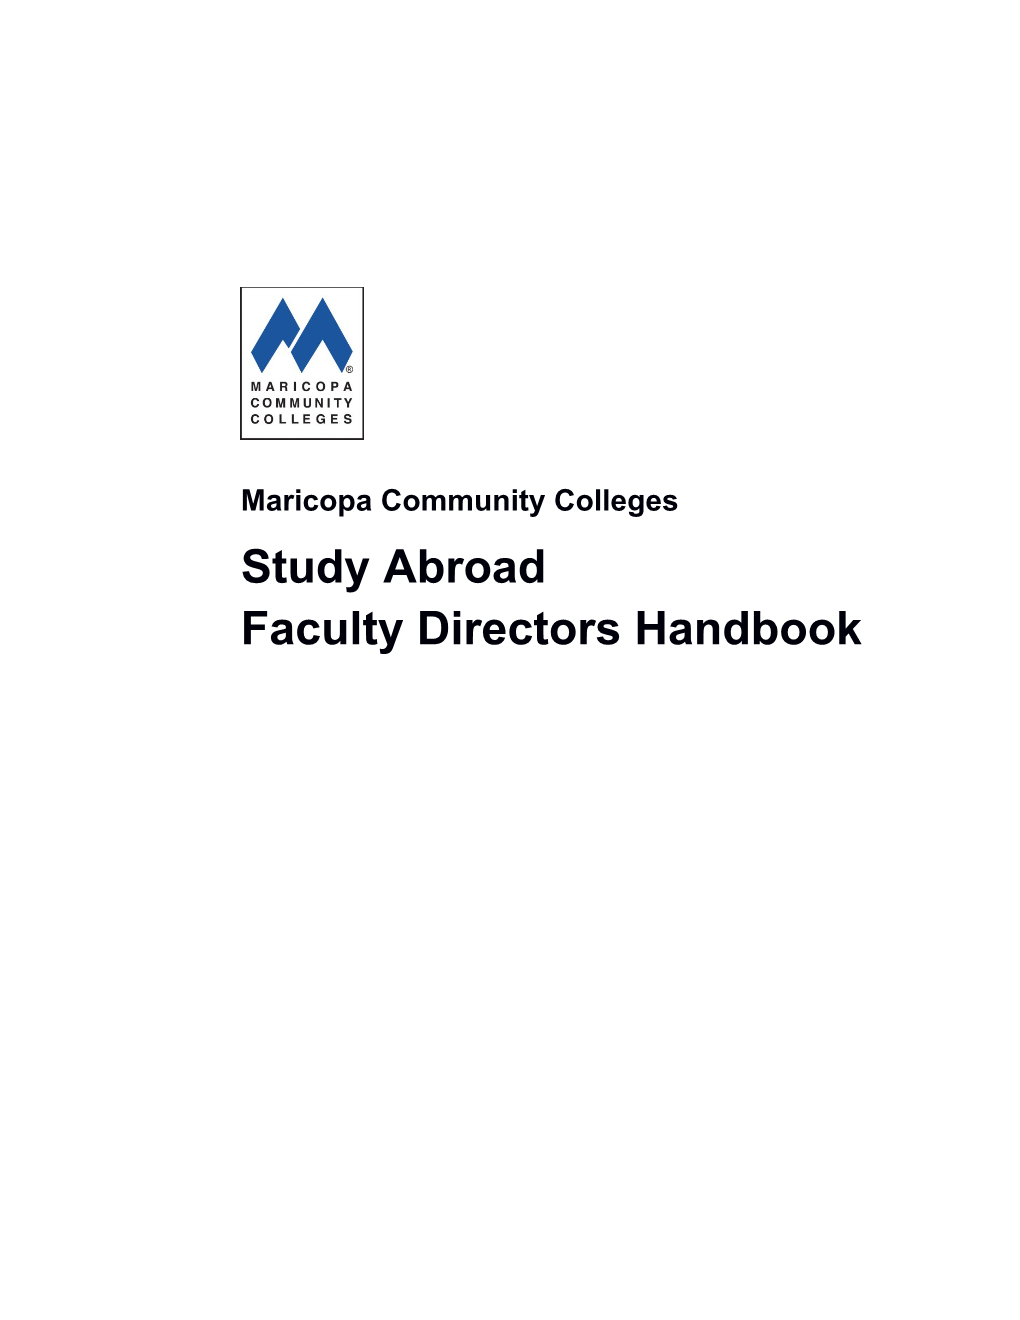 Study Abroad Faculty Directors Handbook